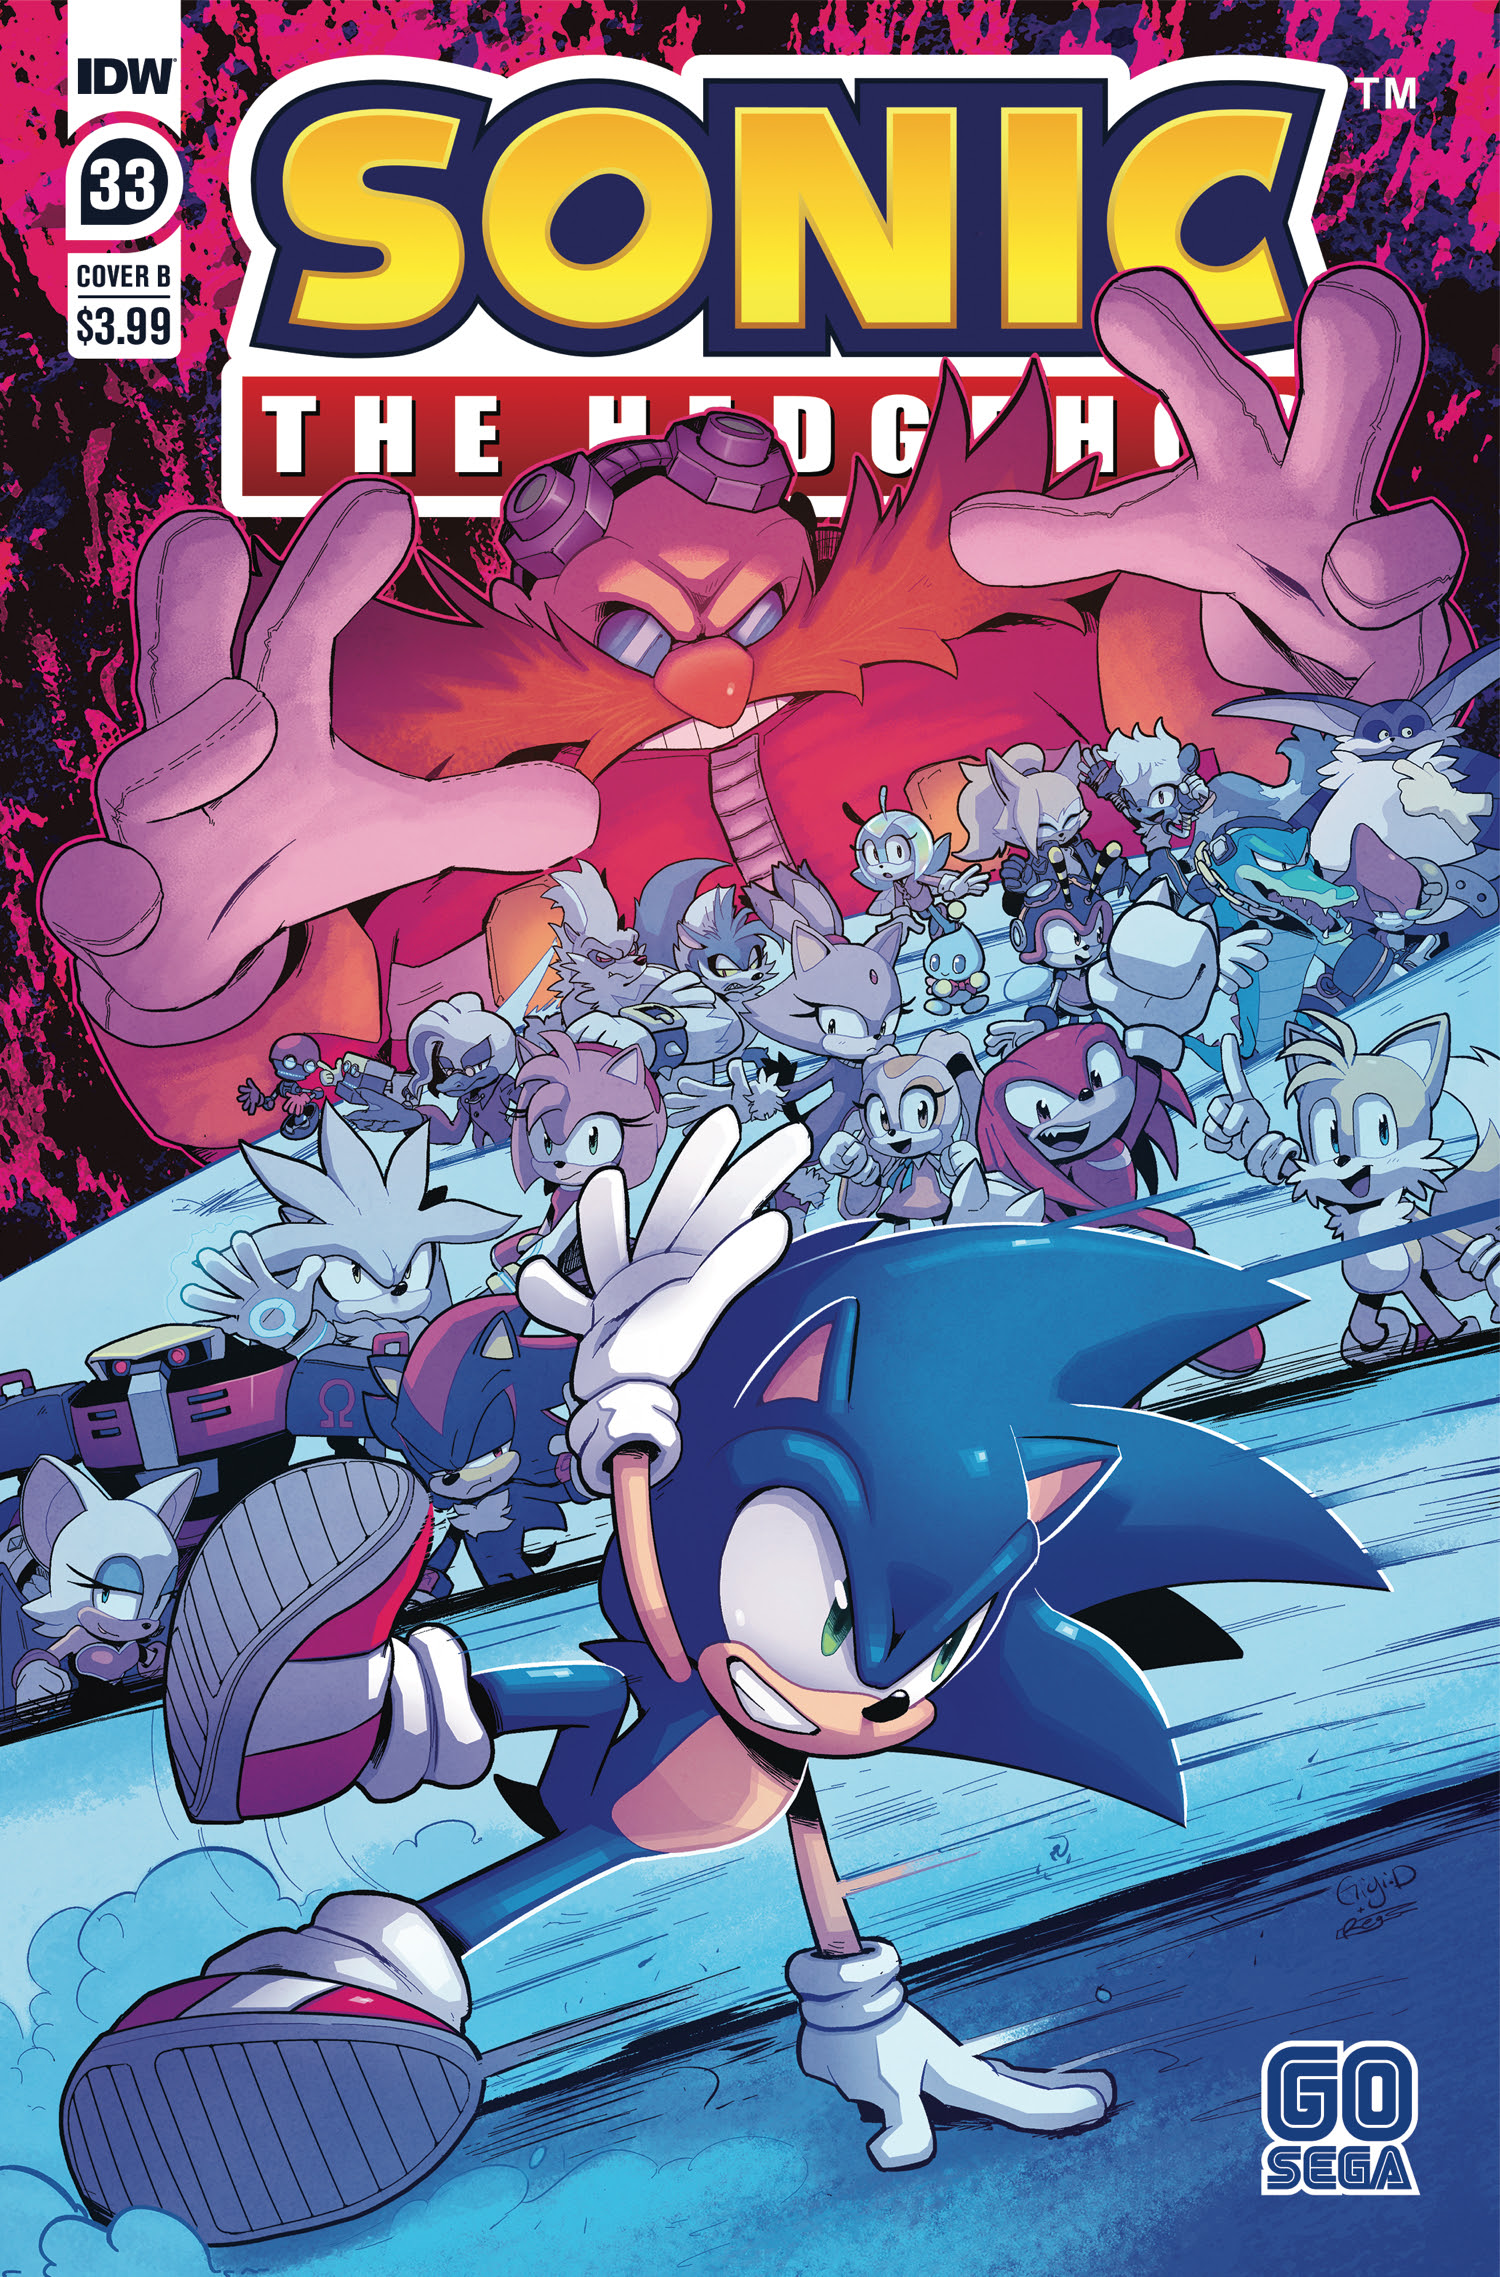 Sonic comic series in artist Evan Stanley as new writer